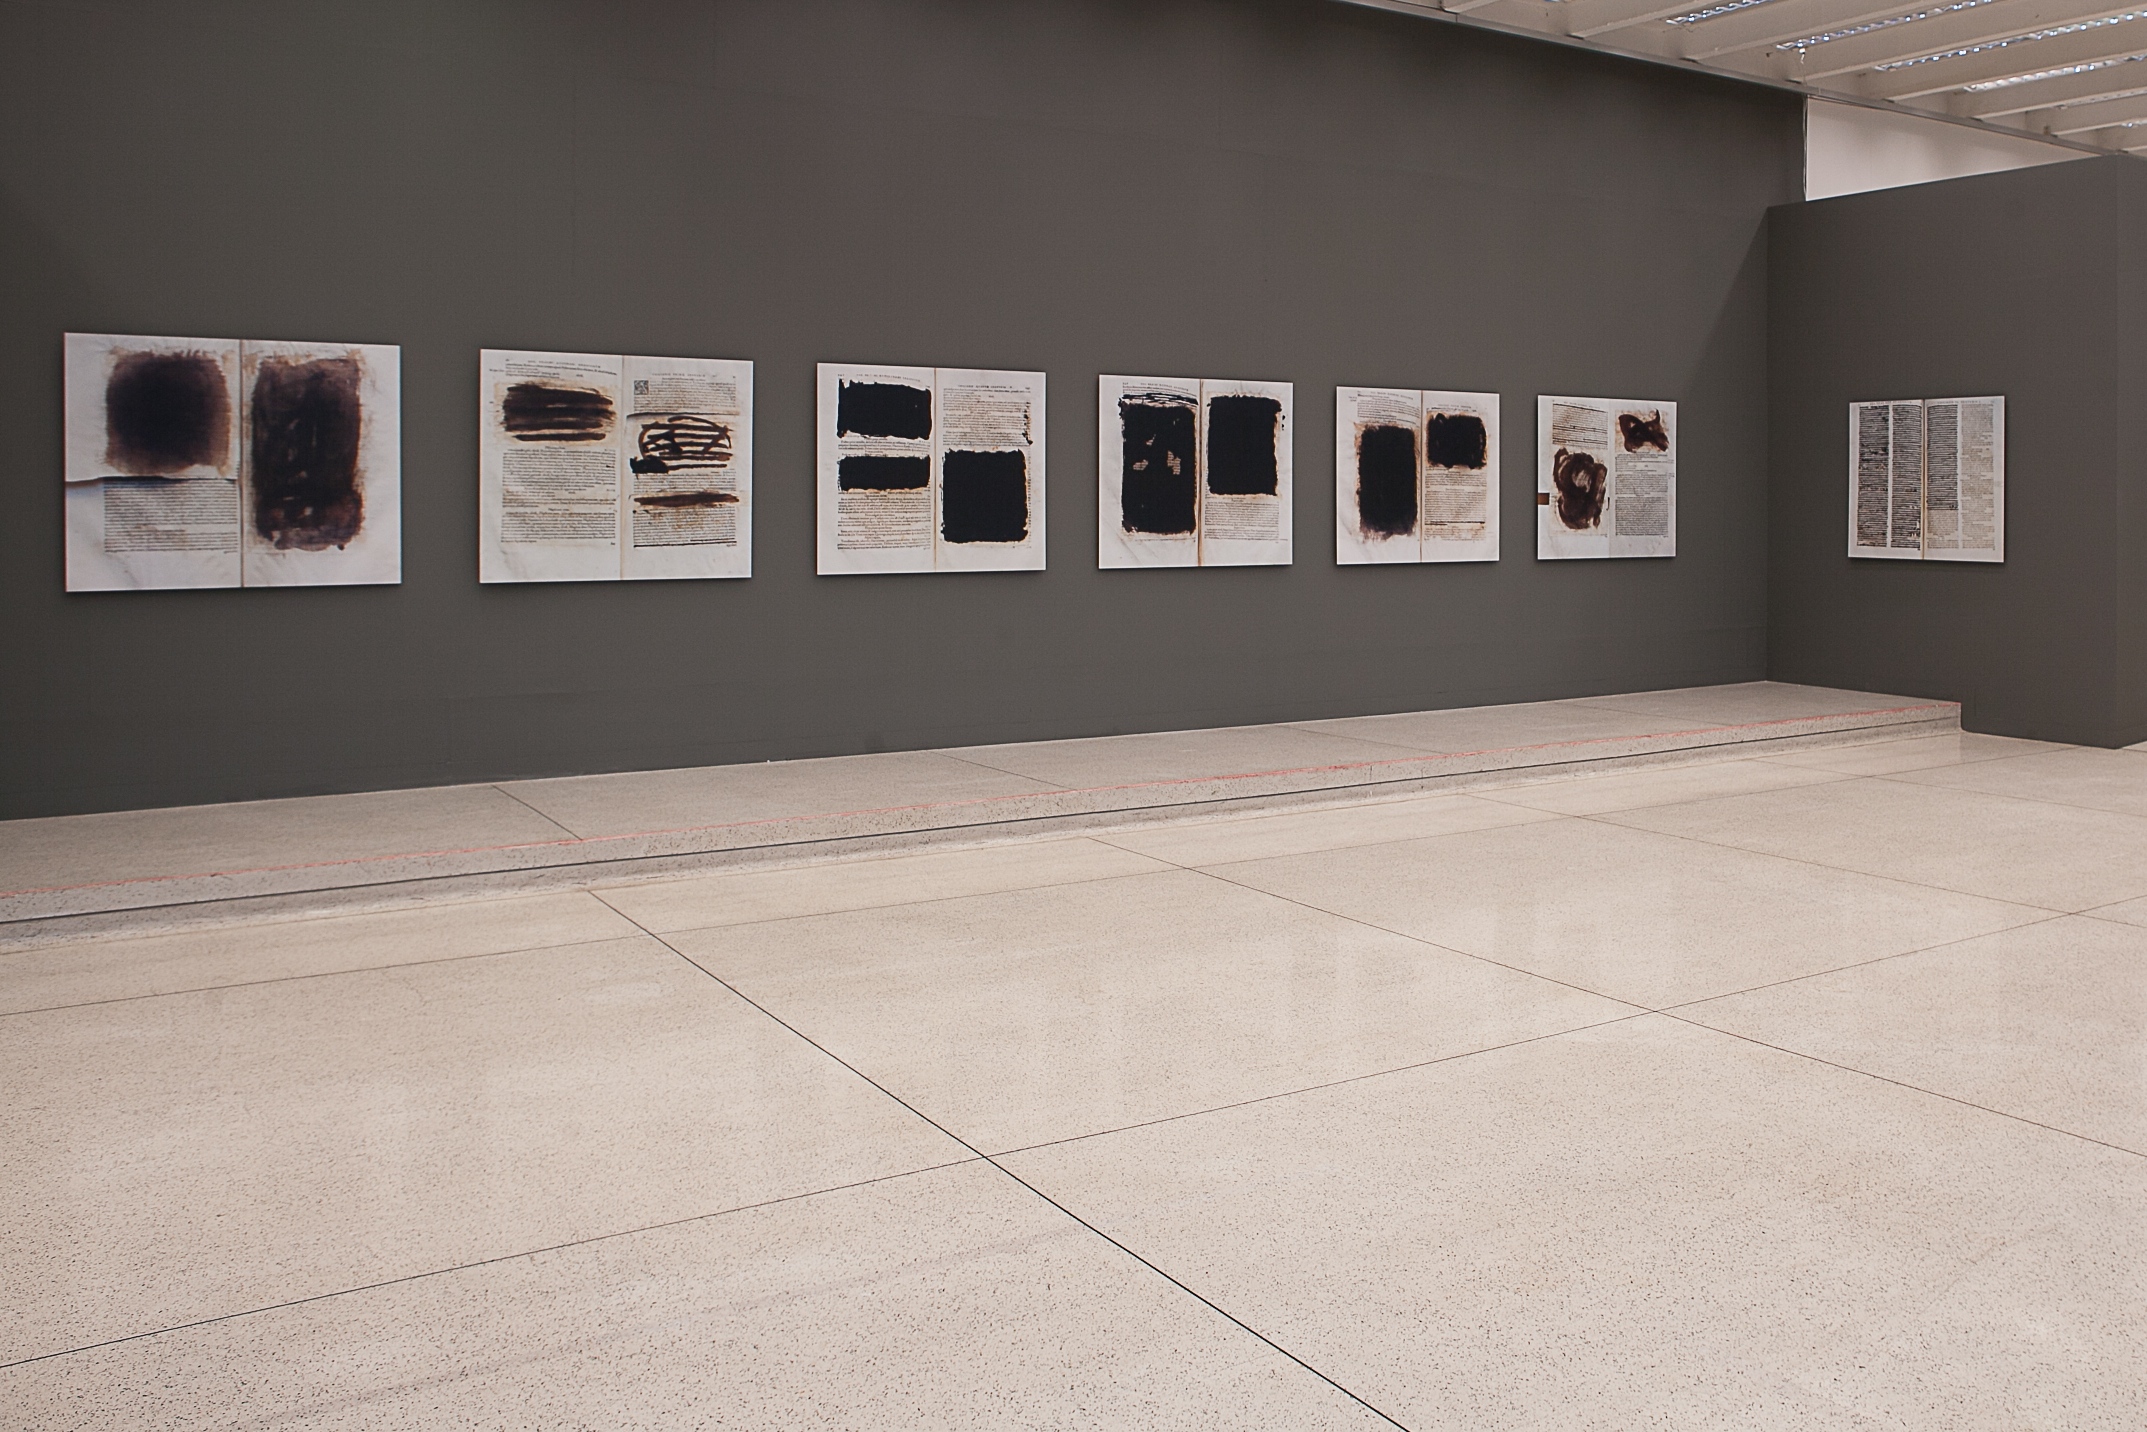   Censored,  2000   Museu Oscar Niemeyer, Brazil, 2015.  Installation view.   &nbsp; 